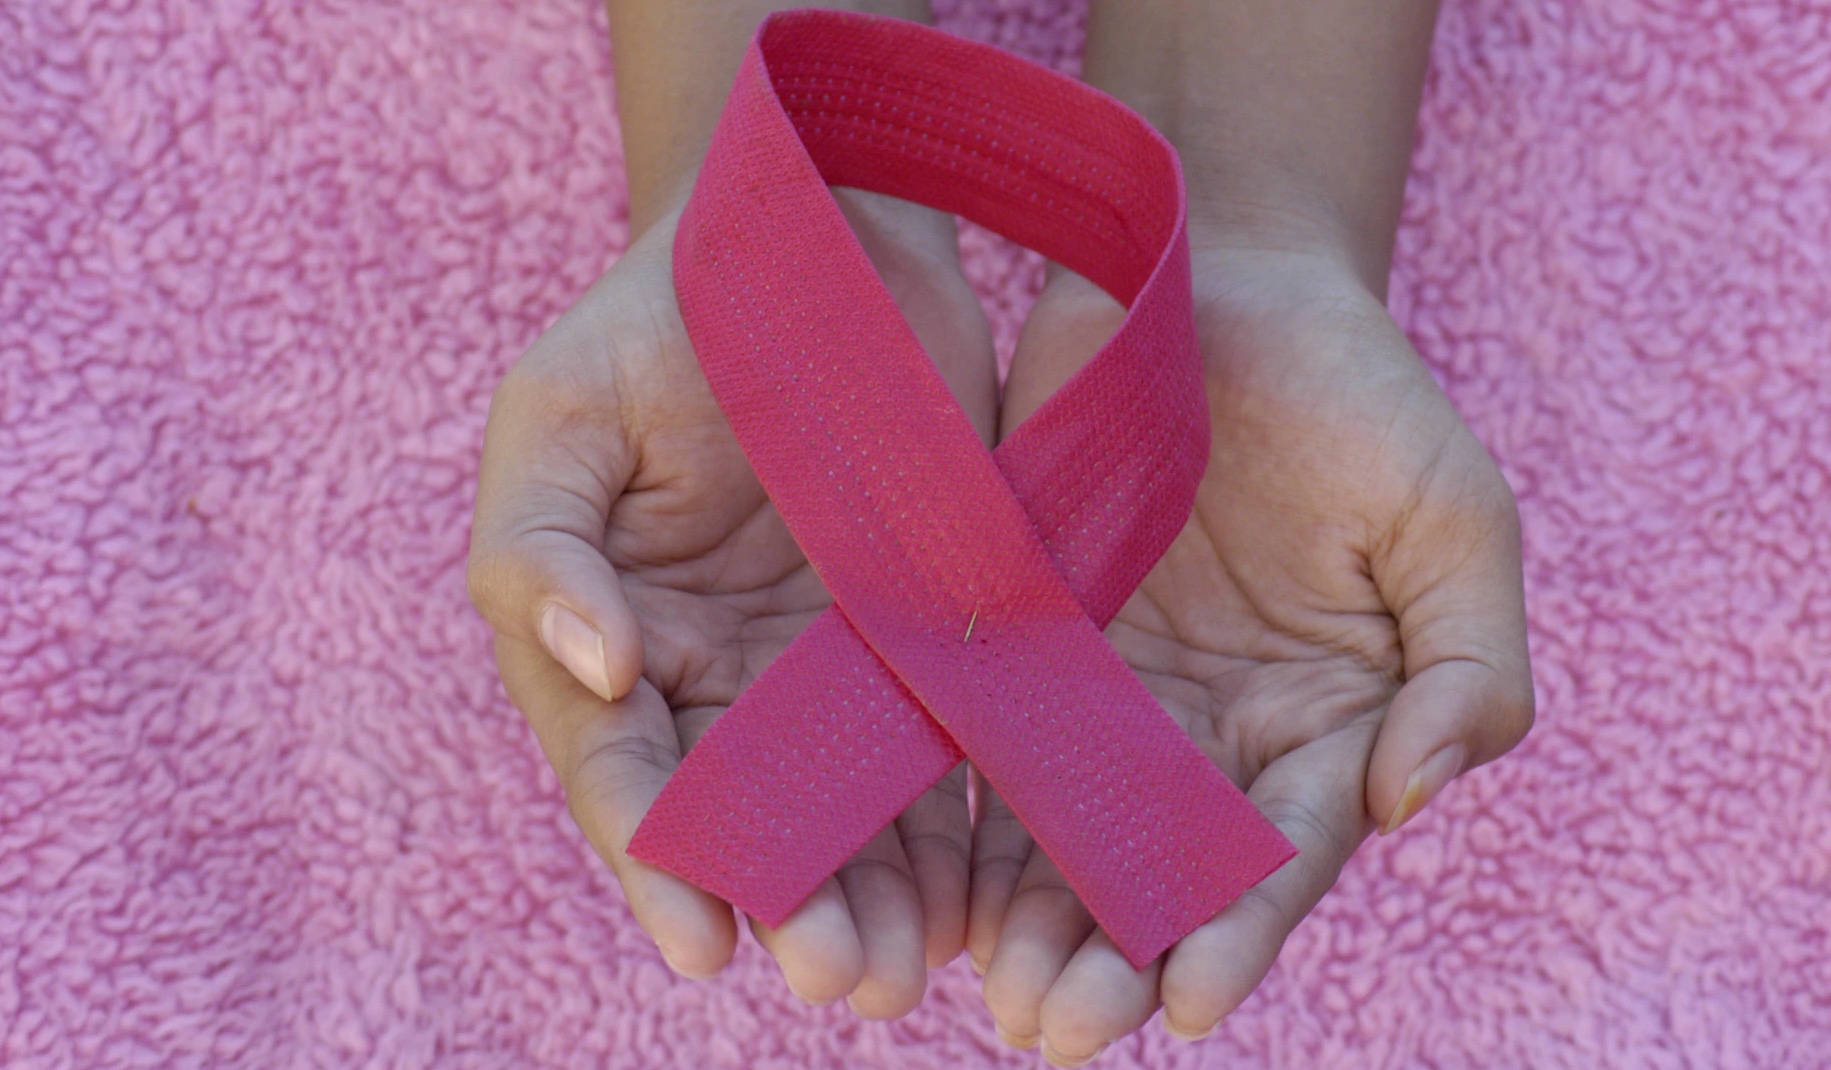 Prevenzione del cancro al seno. Il ministro medita di anticipare a 45 anni lo screening mammografico gratuito